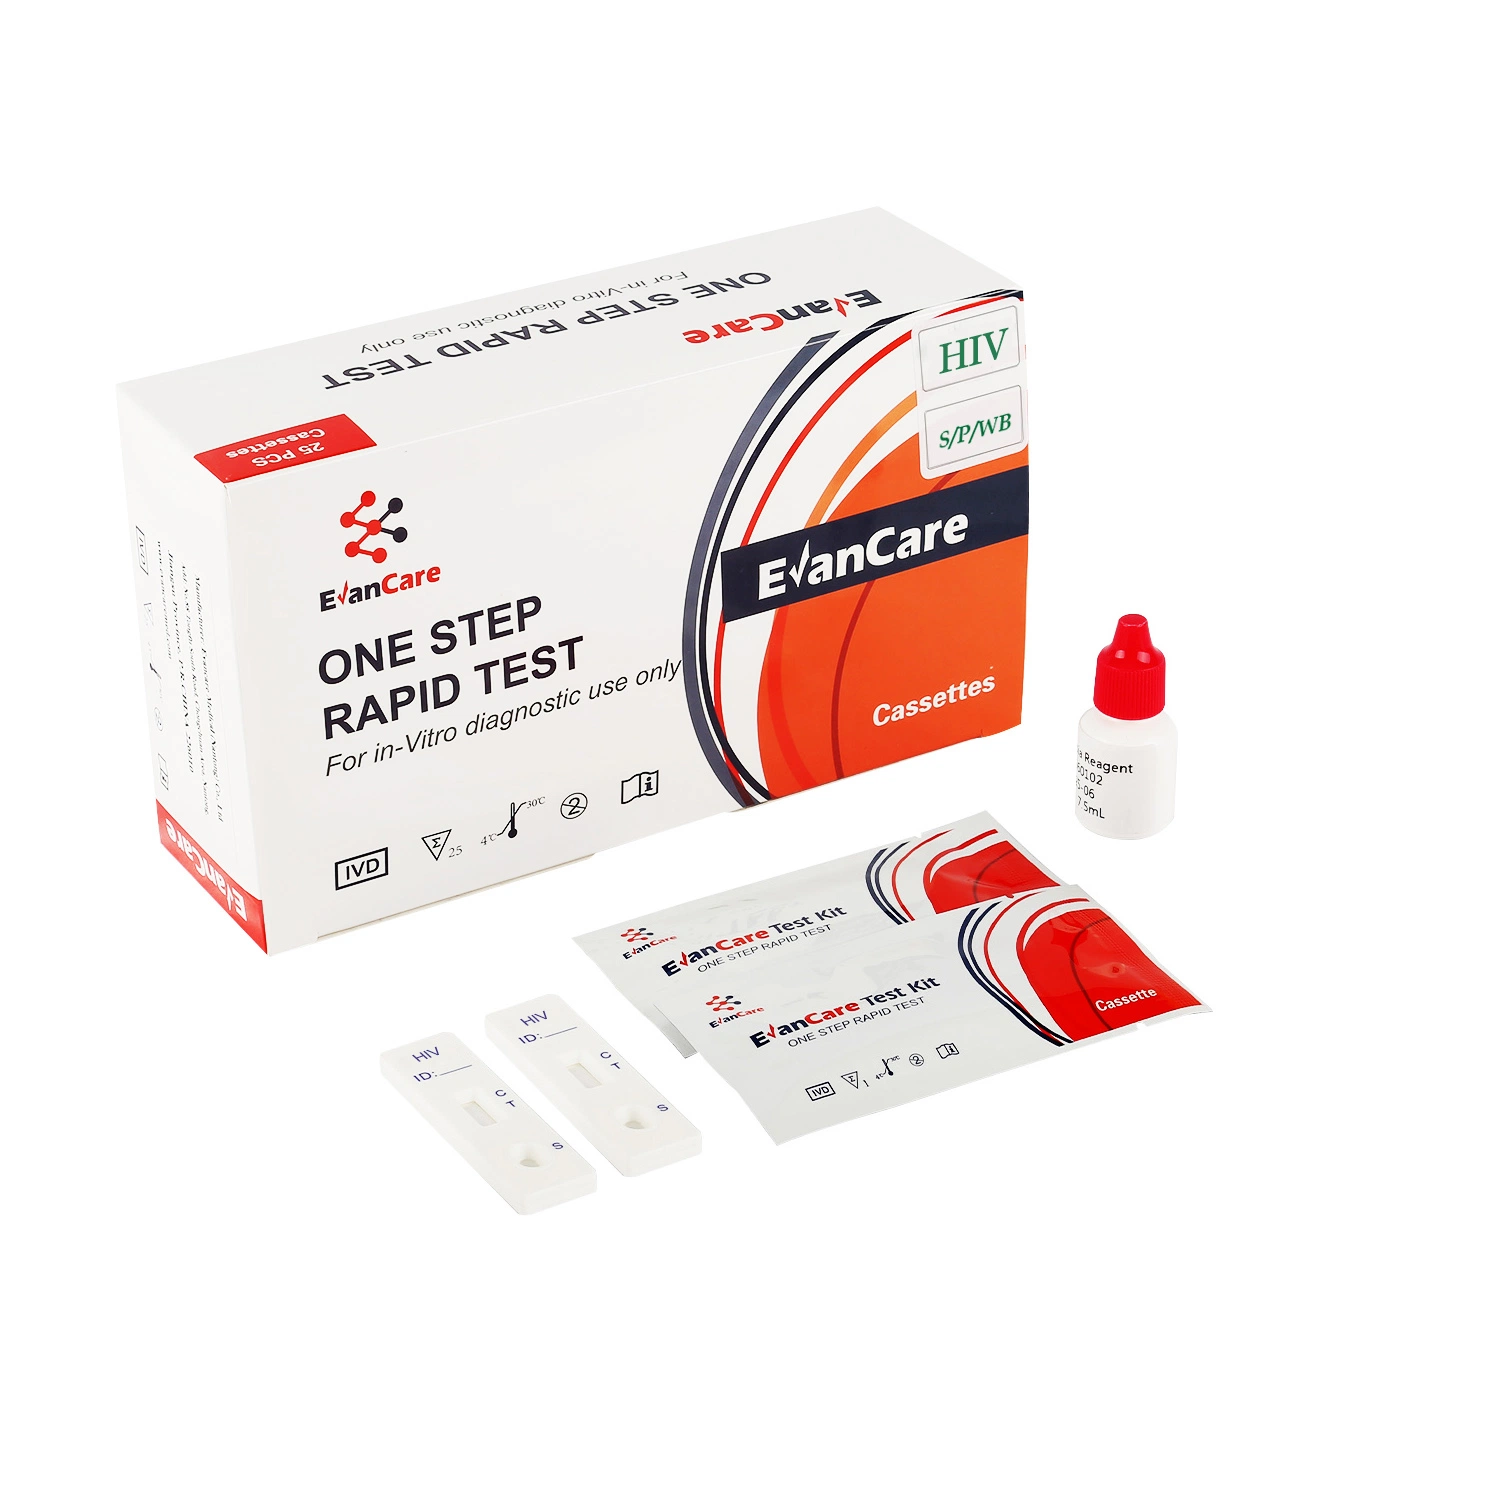 Infectious HIV Rapid Diagnostic Blood Rapid Test Kit Cassette HIV 1+2 Antibody Rapid Test